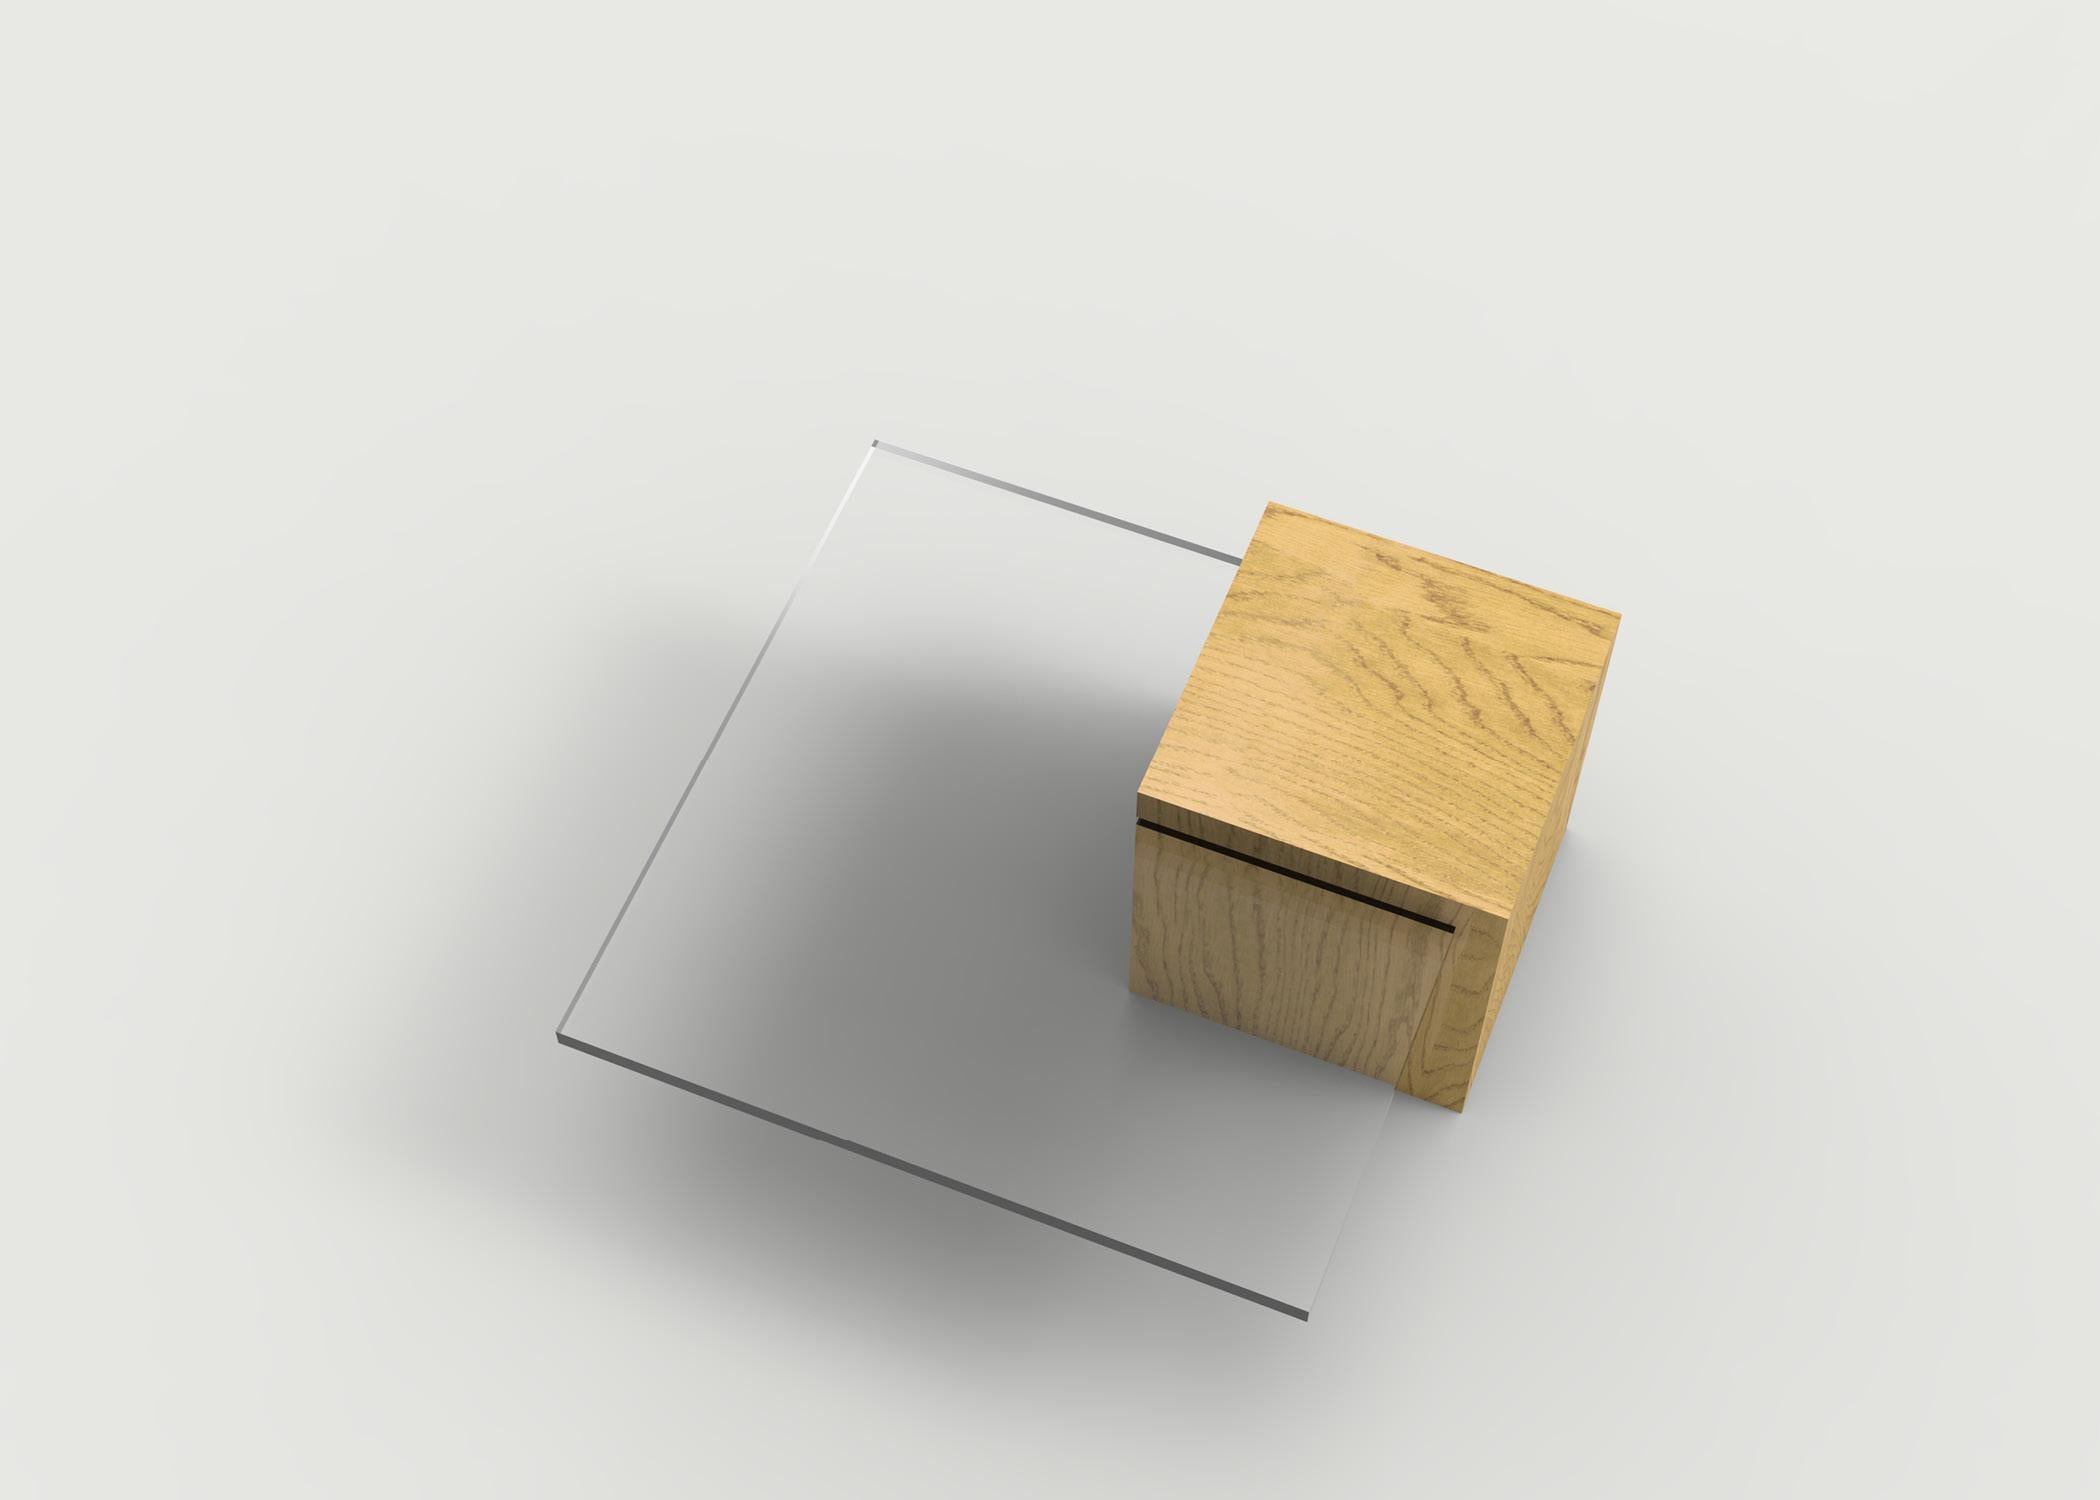 Chêne Table basse en bois personnalisée montrée avec plateau en plexiglas en vente